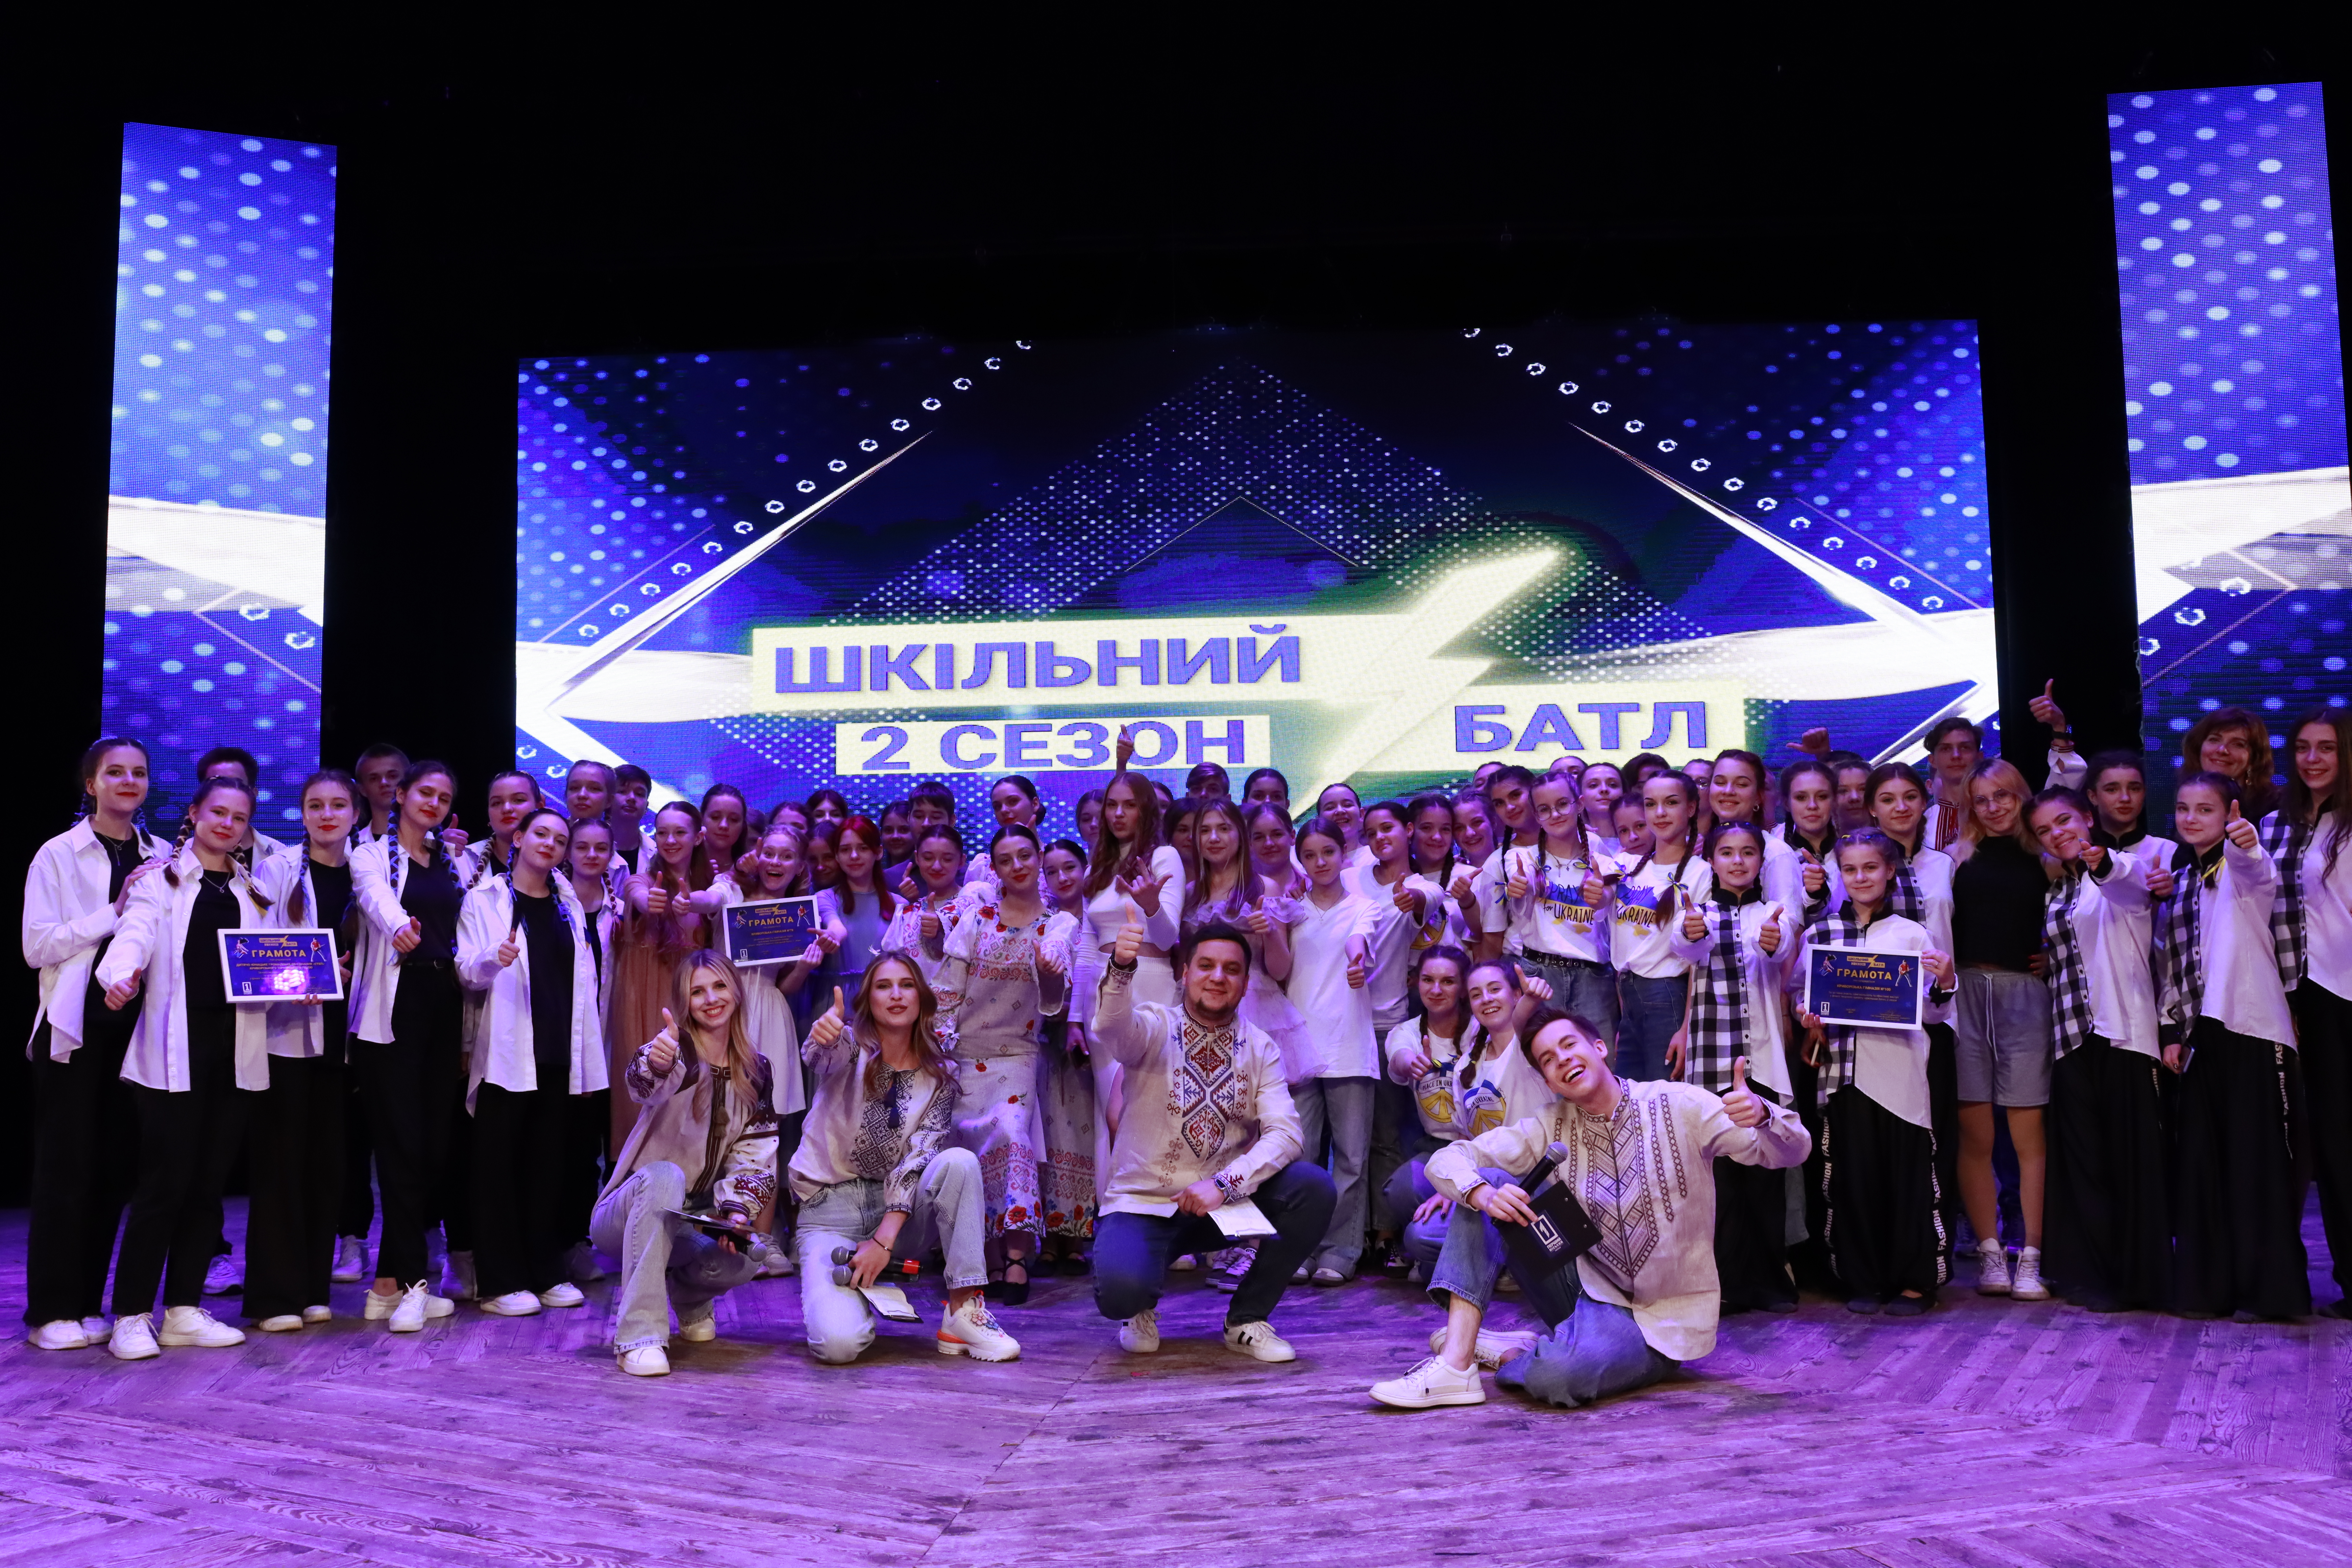 Объединили тысячи украинских сердец: объявлены победители второго сезона грандиозного «Школьного баттла» от «Первого Городского» и Департамента образования и науки КГС